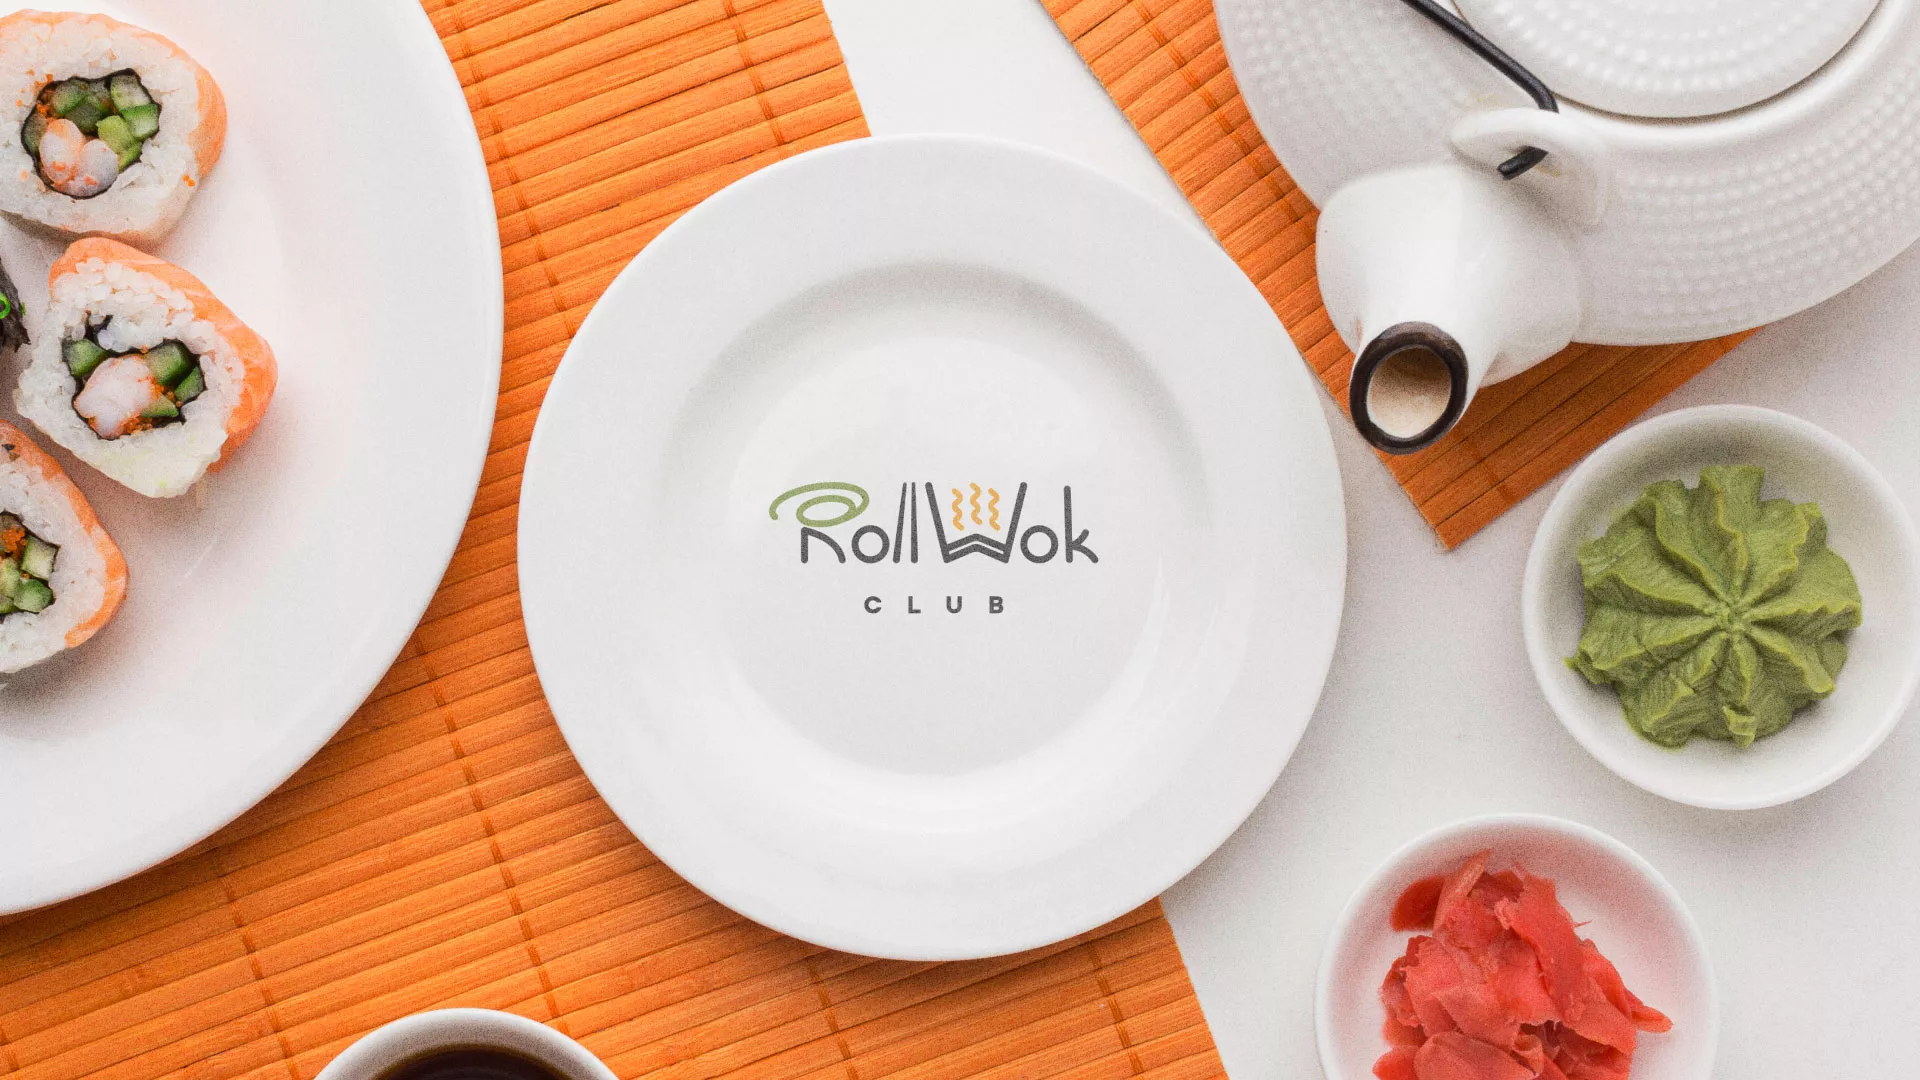 Разработка логотипа и фирменного стиля суши-бара «Roll Wok Club» в Волжском